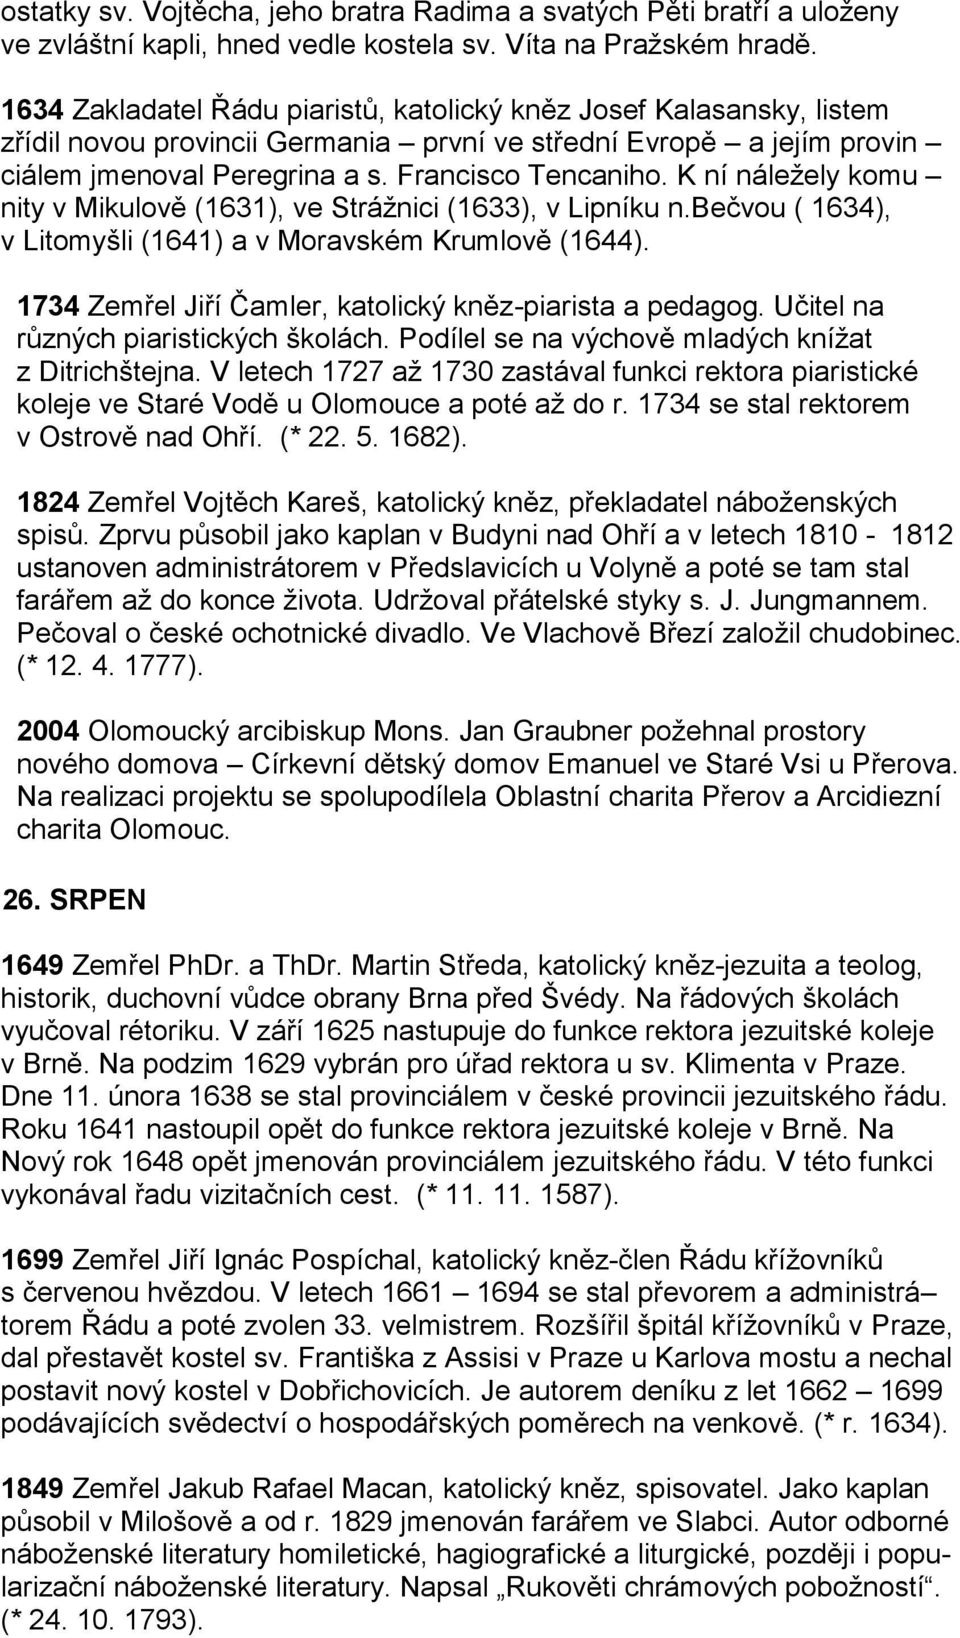 K ní náležely komu nity v Mikulově (1631), ve Strážnici (1633), v Lipníku n.bečvou ( 1634), v Litomyšli (1641) a v Moravském Krumlově (1644).